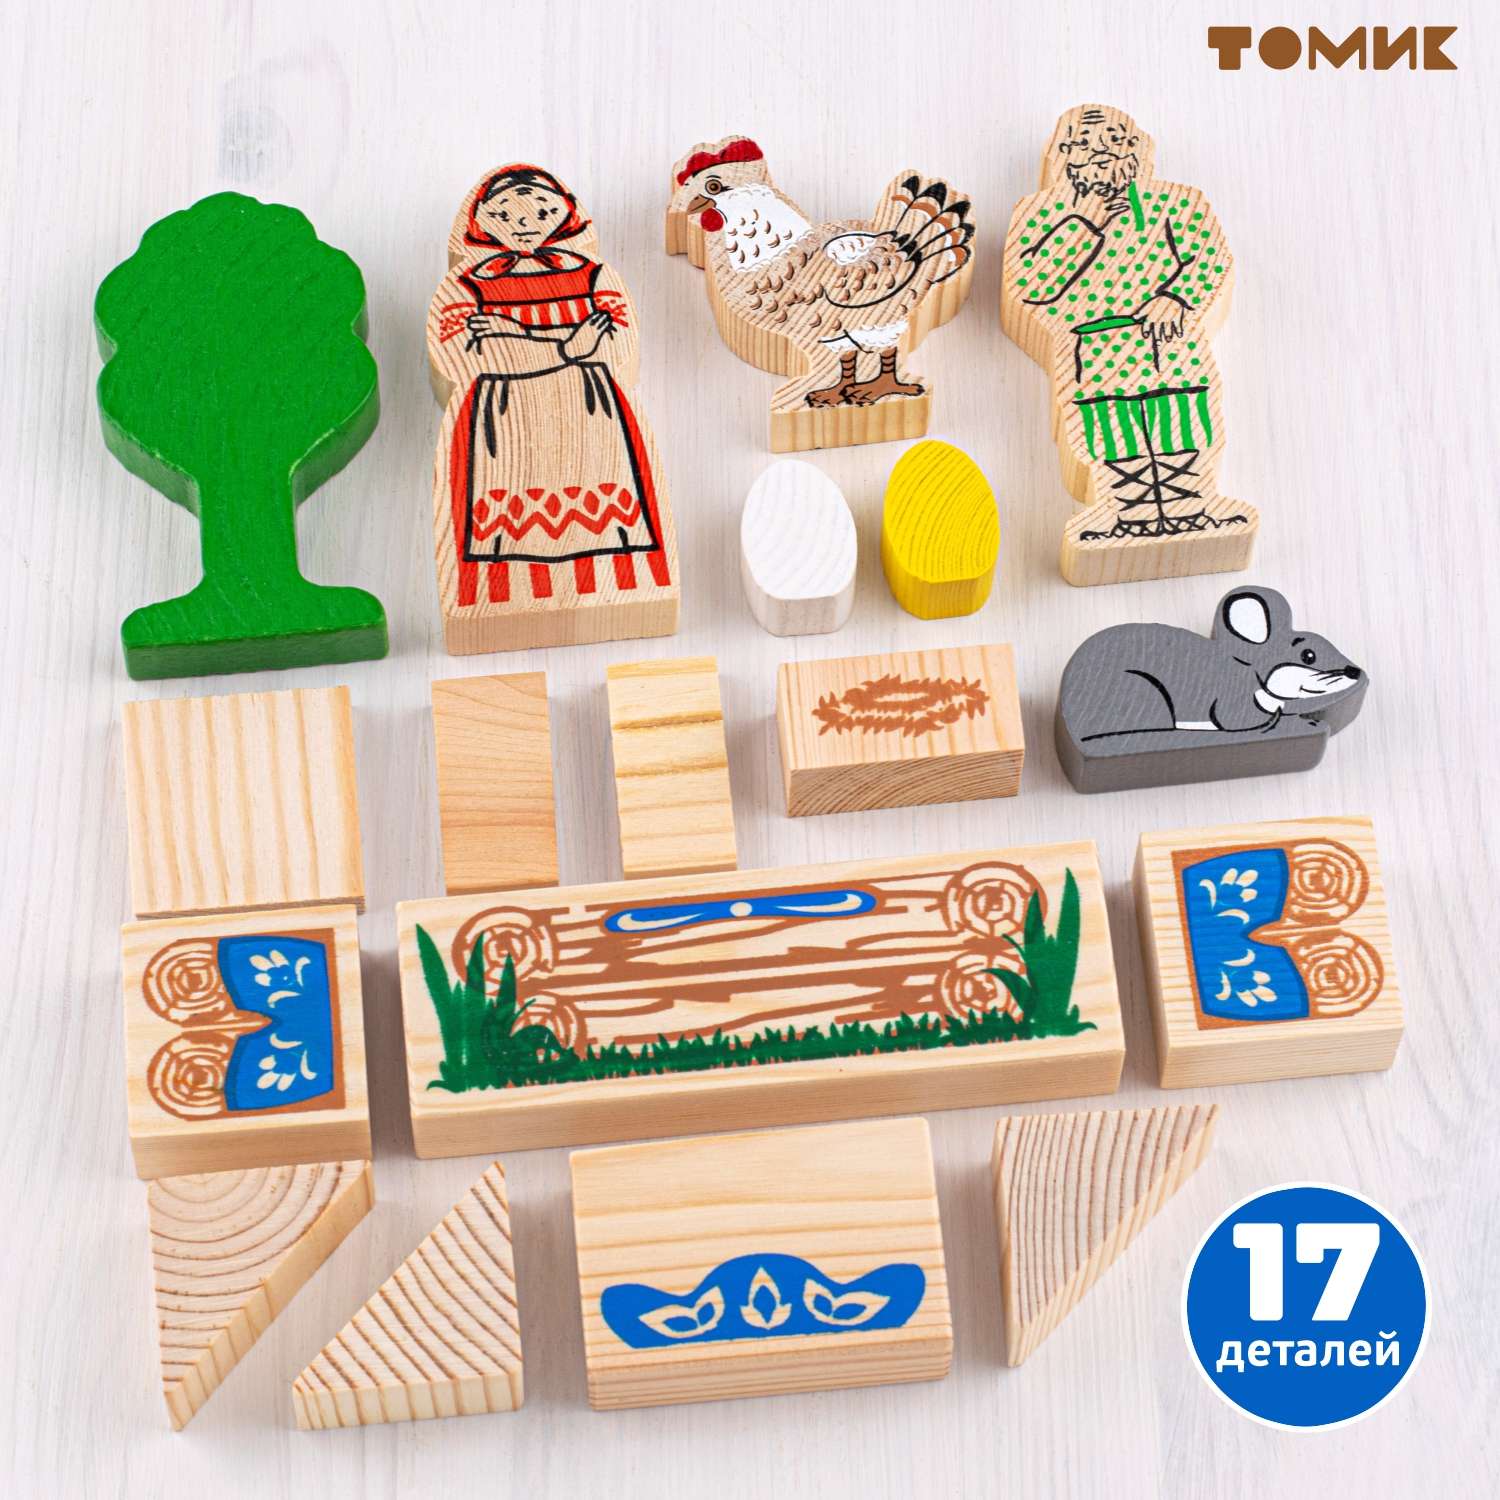 Конструктор детский деревянный Томик сказка курочка ряба 17 деталей 4534-1 - фото 2